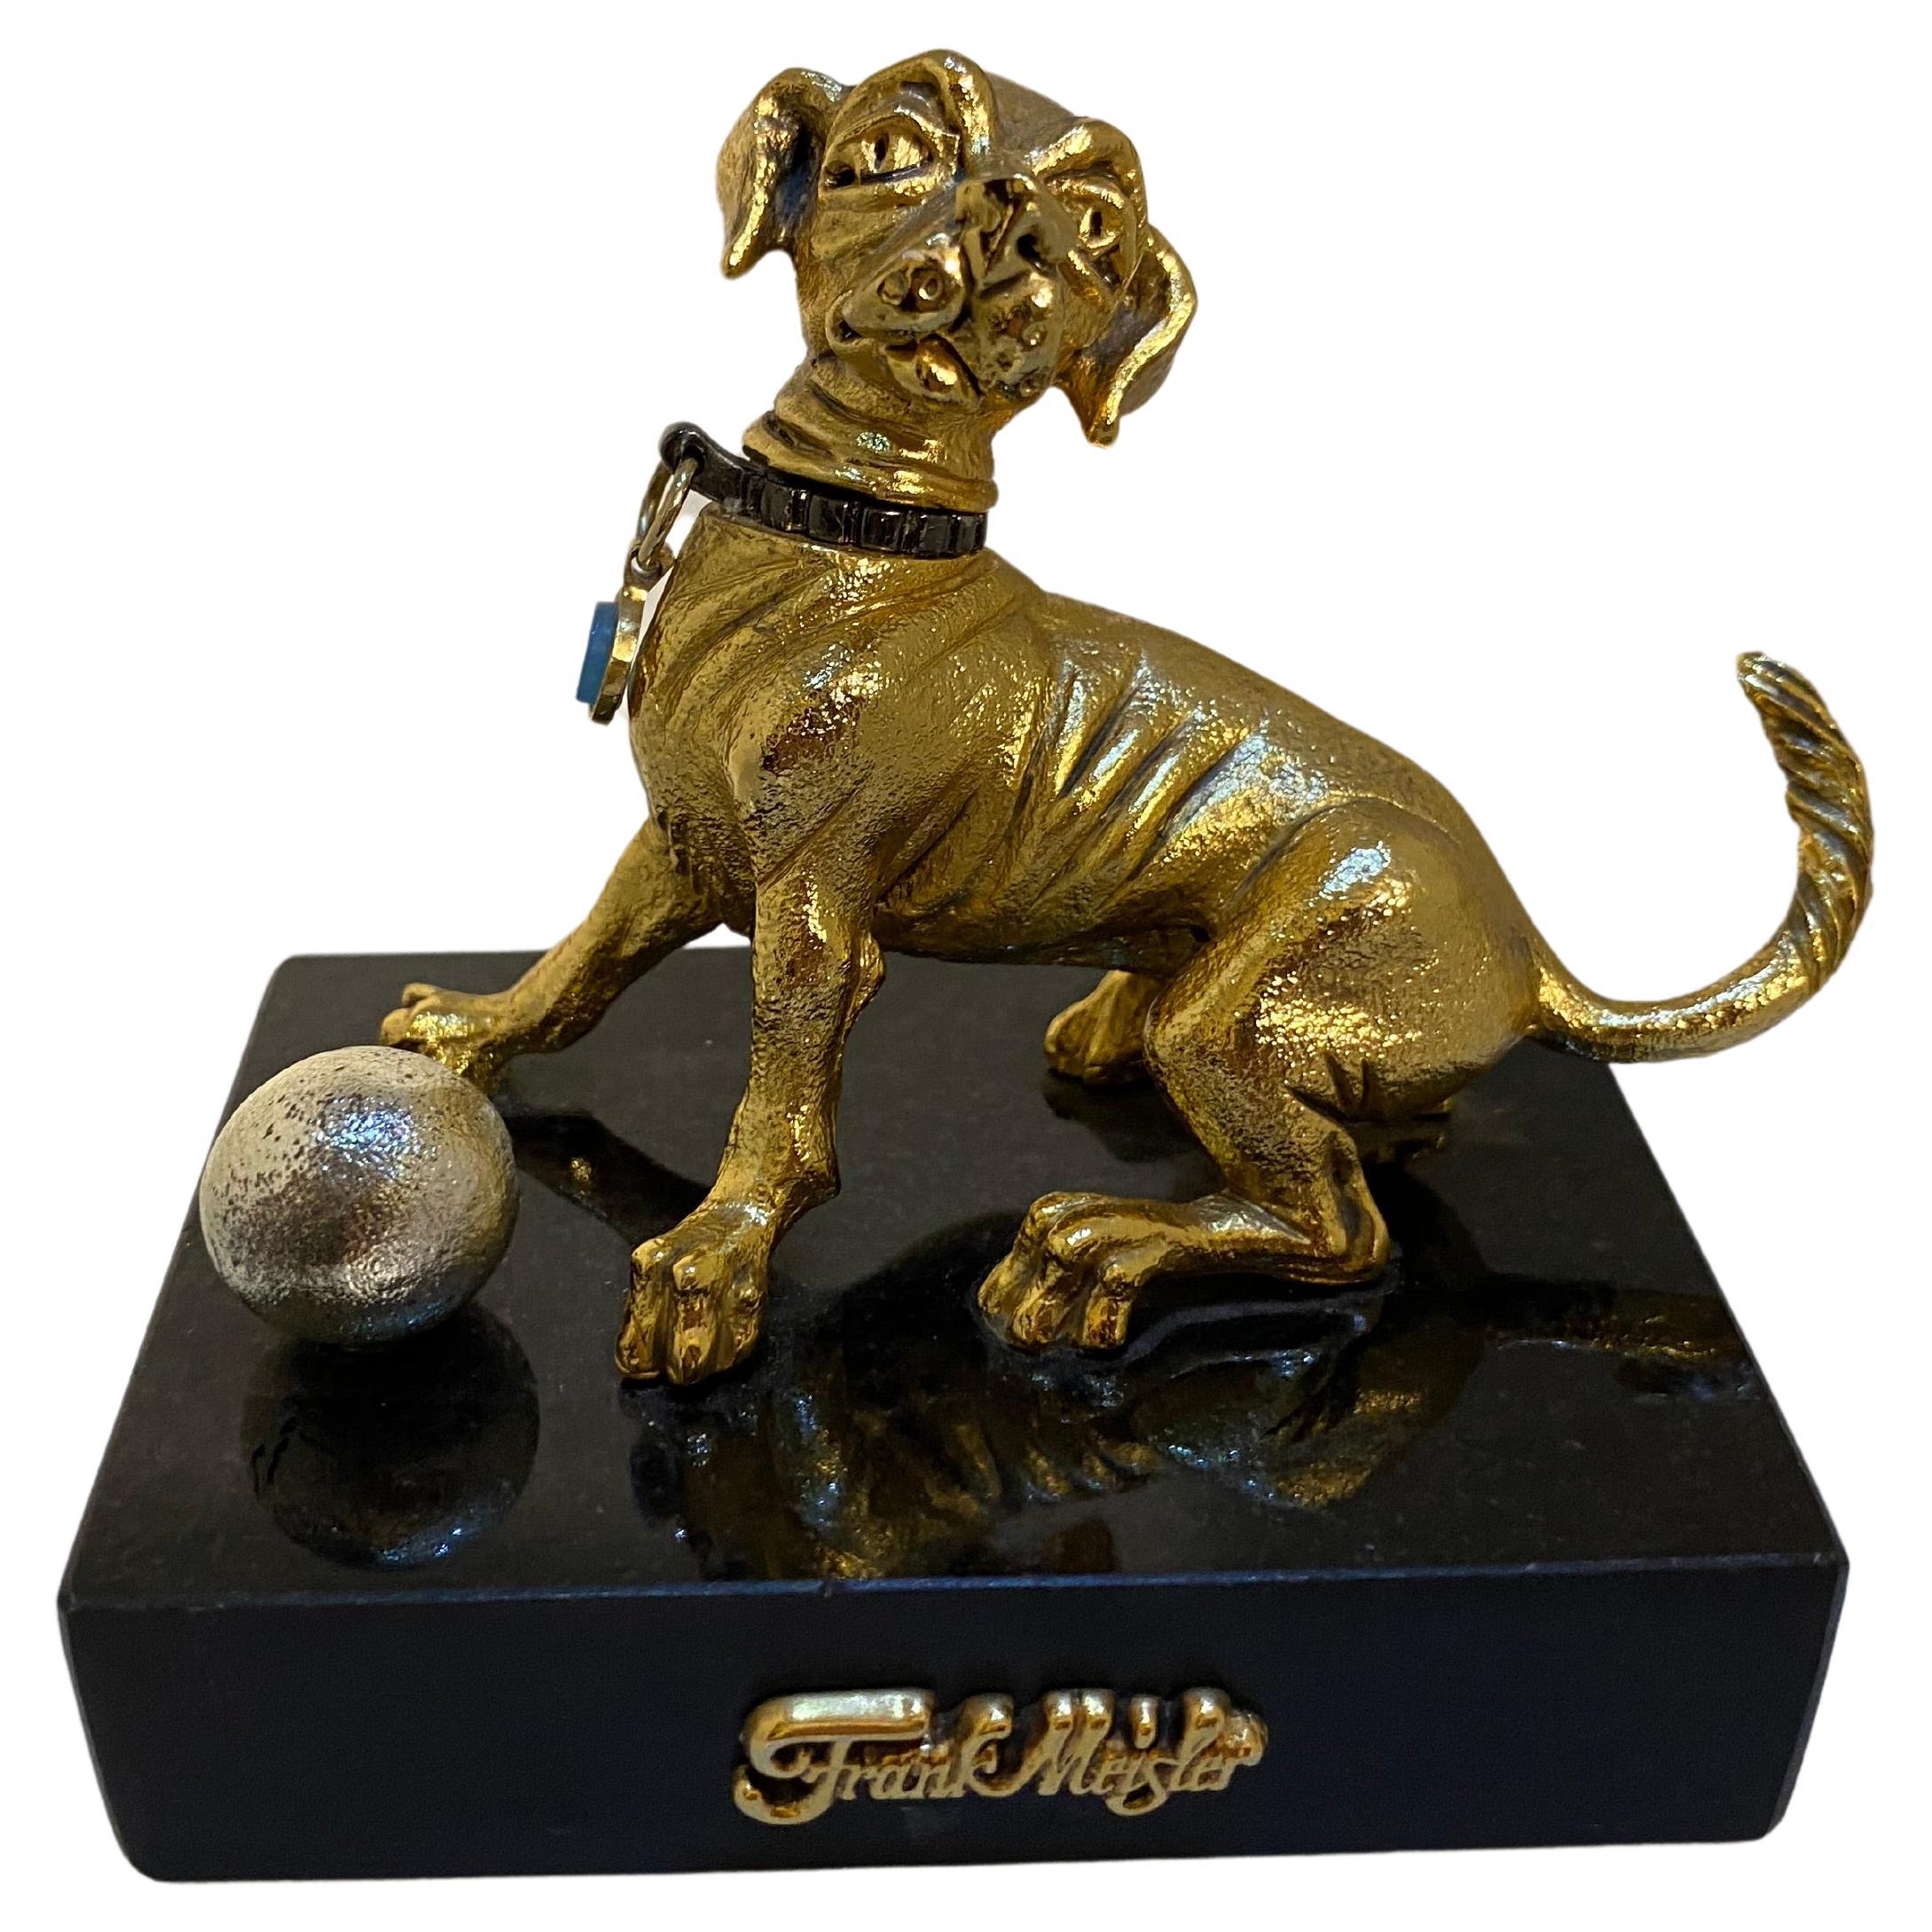 Frank Meisler Mini-Gold-Hunde